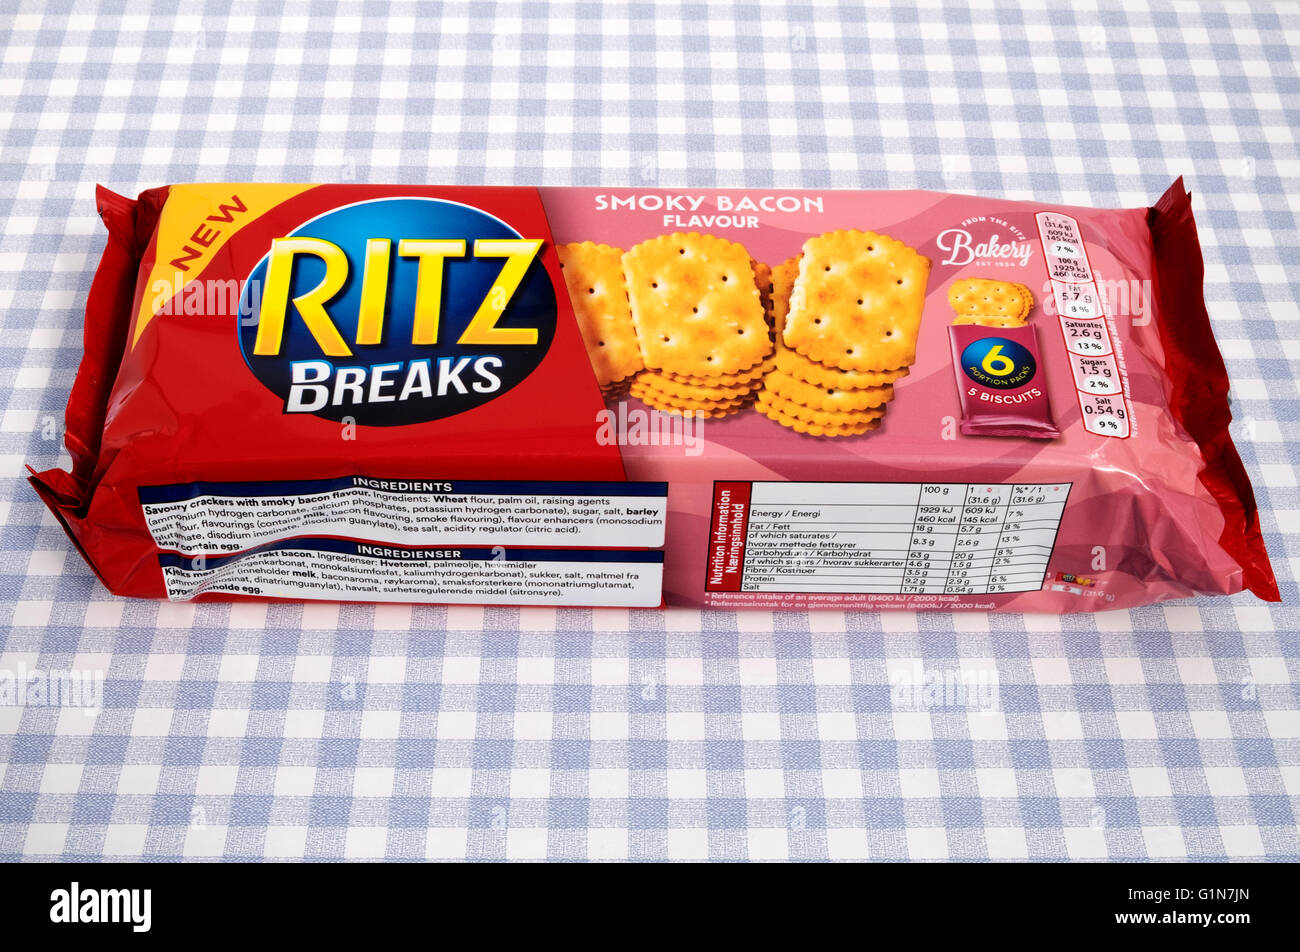 Ritz Breaks smoky Bacon crackers Stock Photo